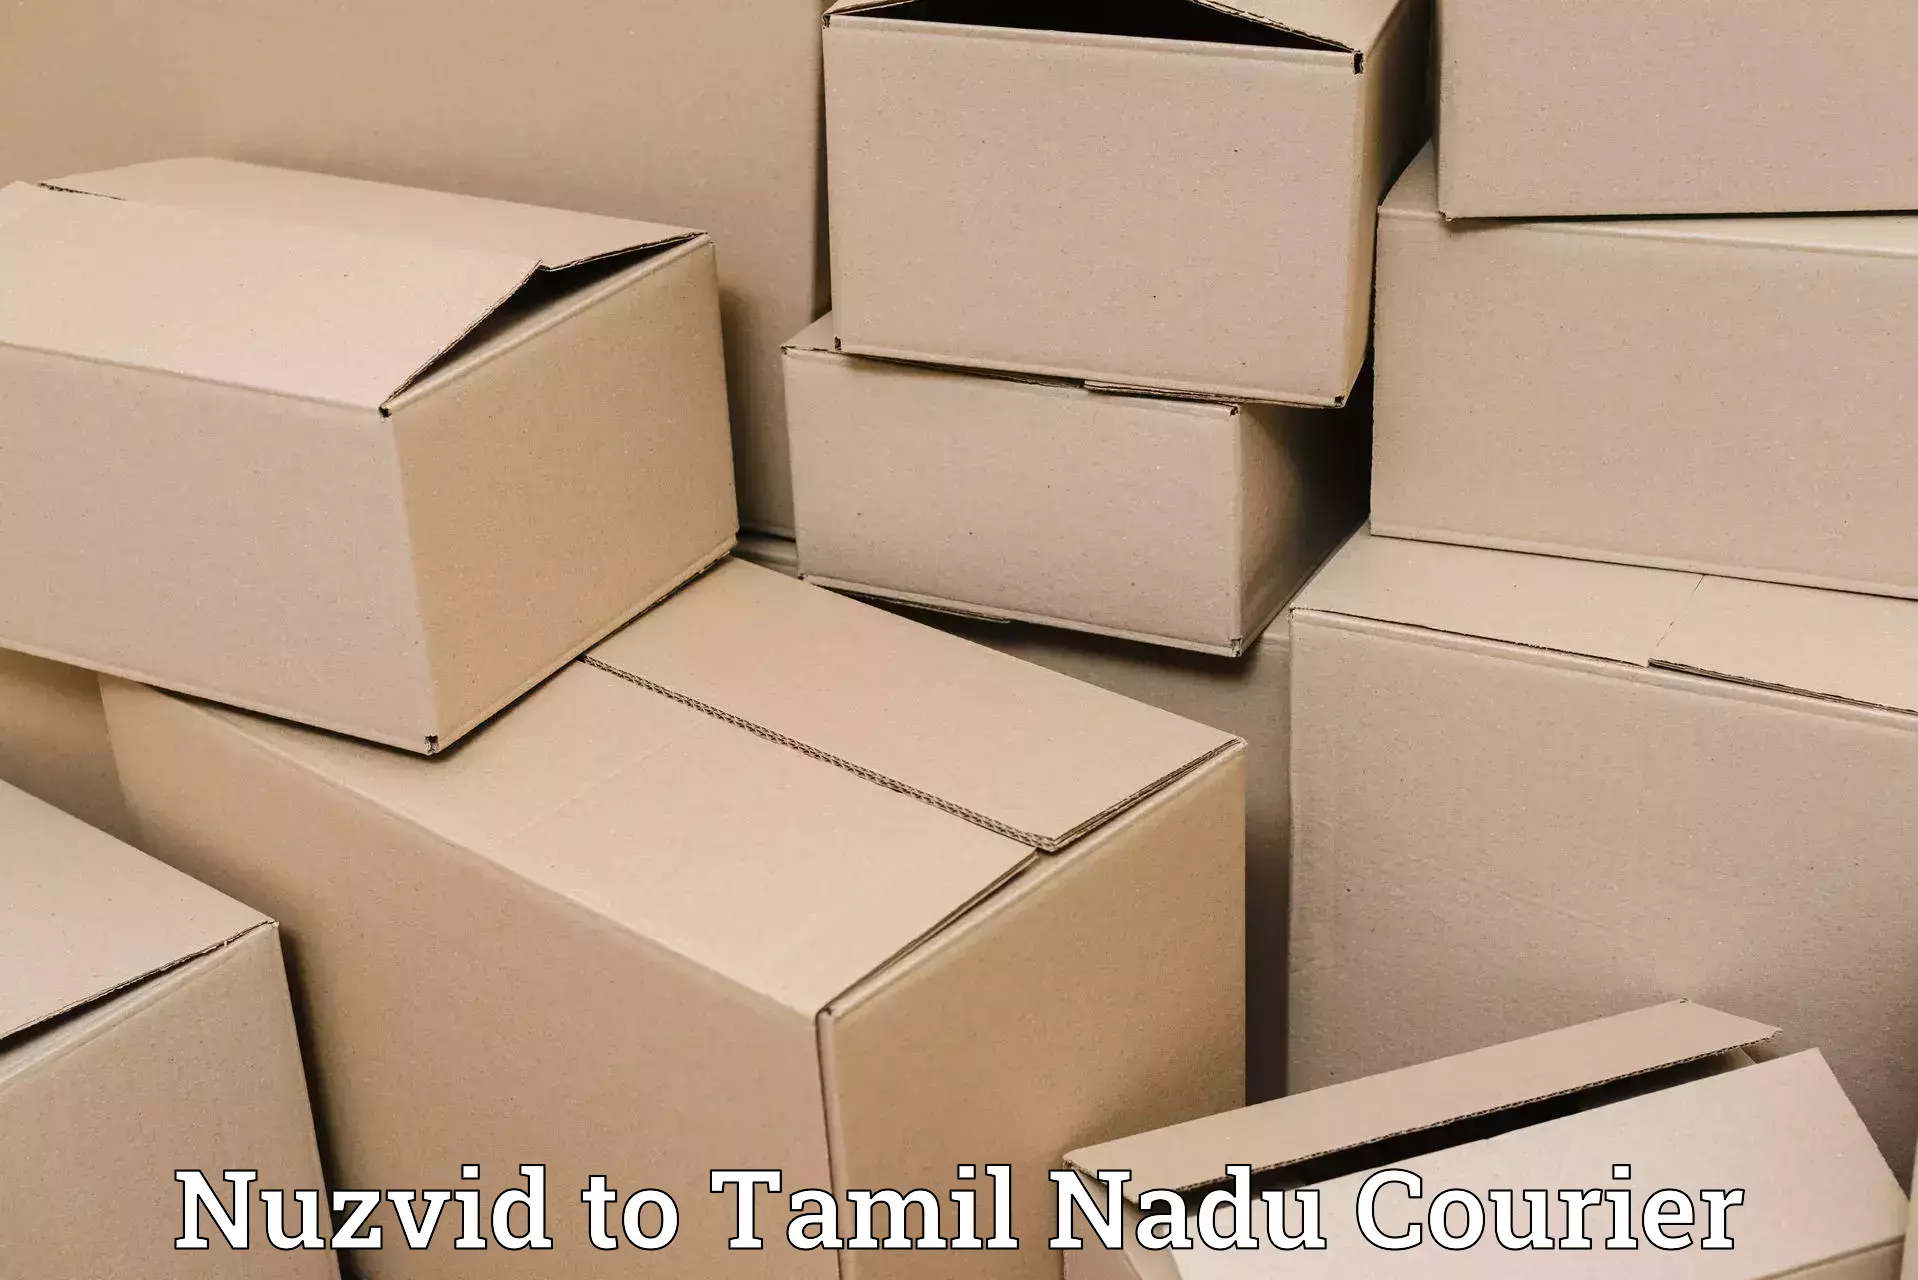 Heavy parcel delivery Nuzvid to Gudiyattam